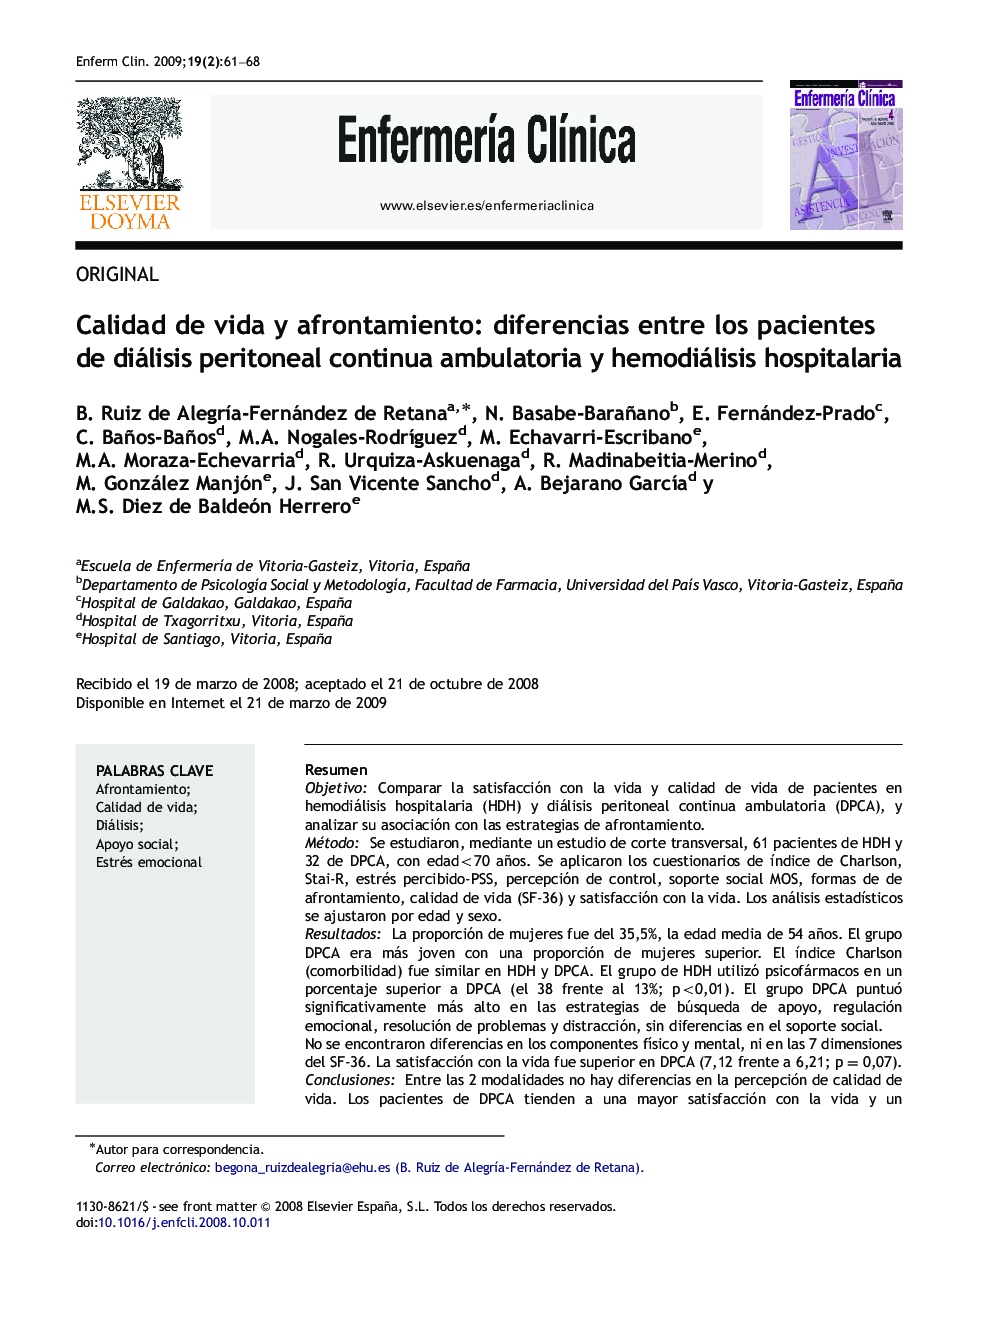 Calidad de vida y afrontamiento: diferencias entre los pacientes de diálisis peritoneal continua ambulatoria y hemodiálisis hospitalaria